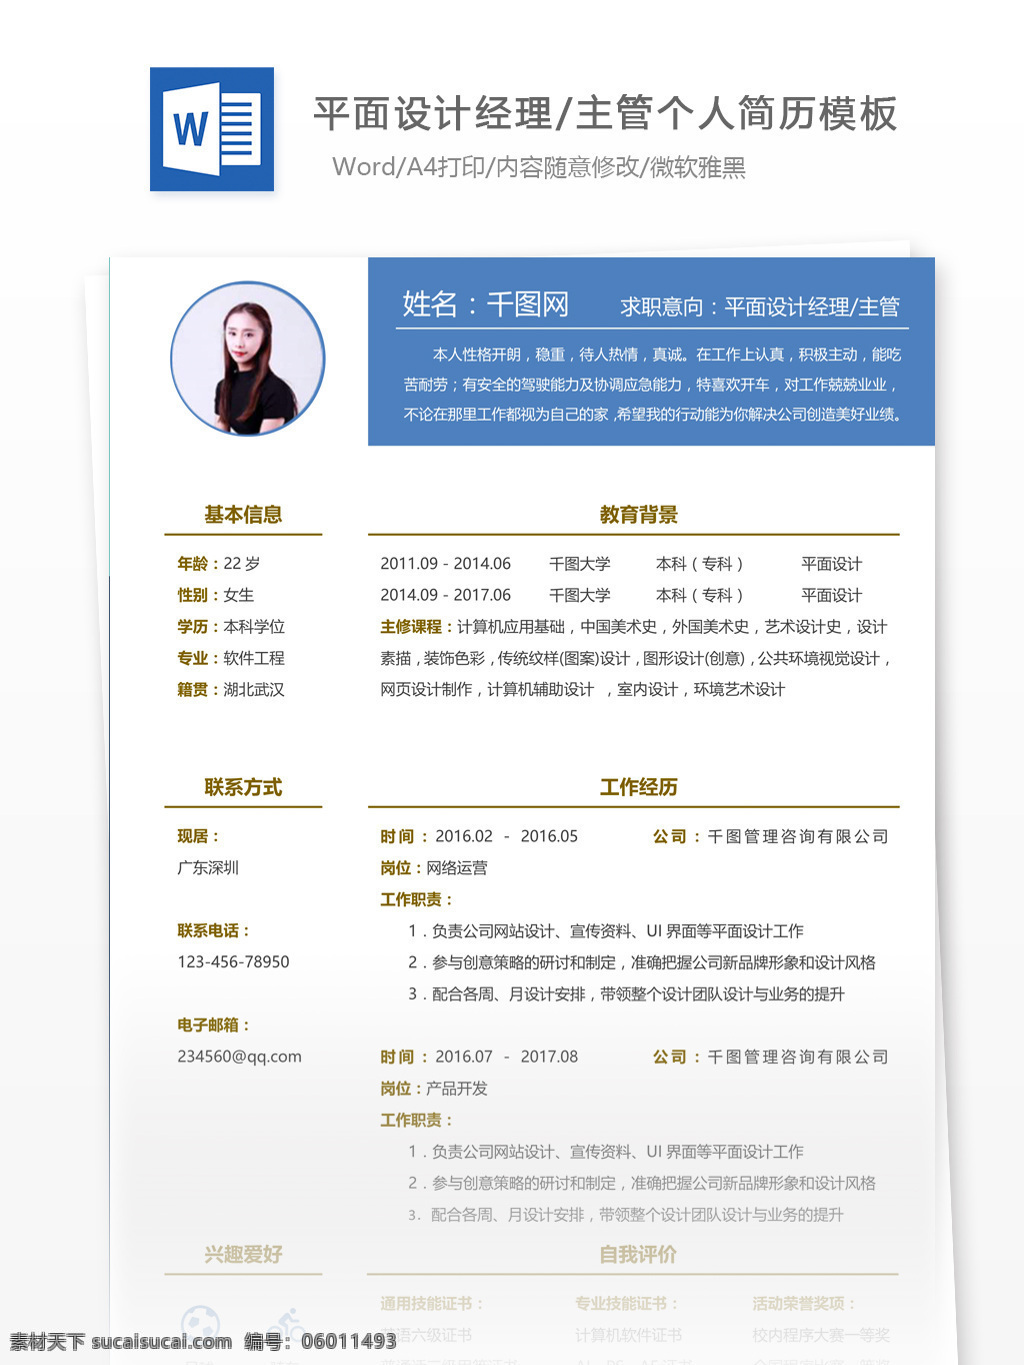 平面设计 经理 主管 中文 简历 个人简历 简历模板 应届毕业生 模板